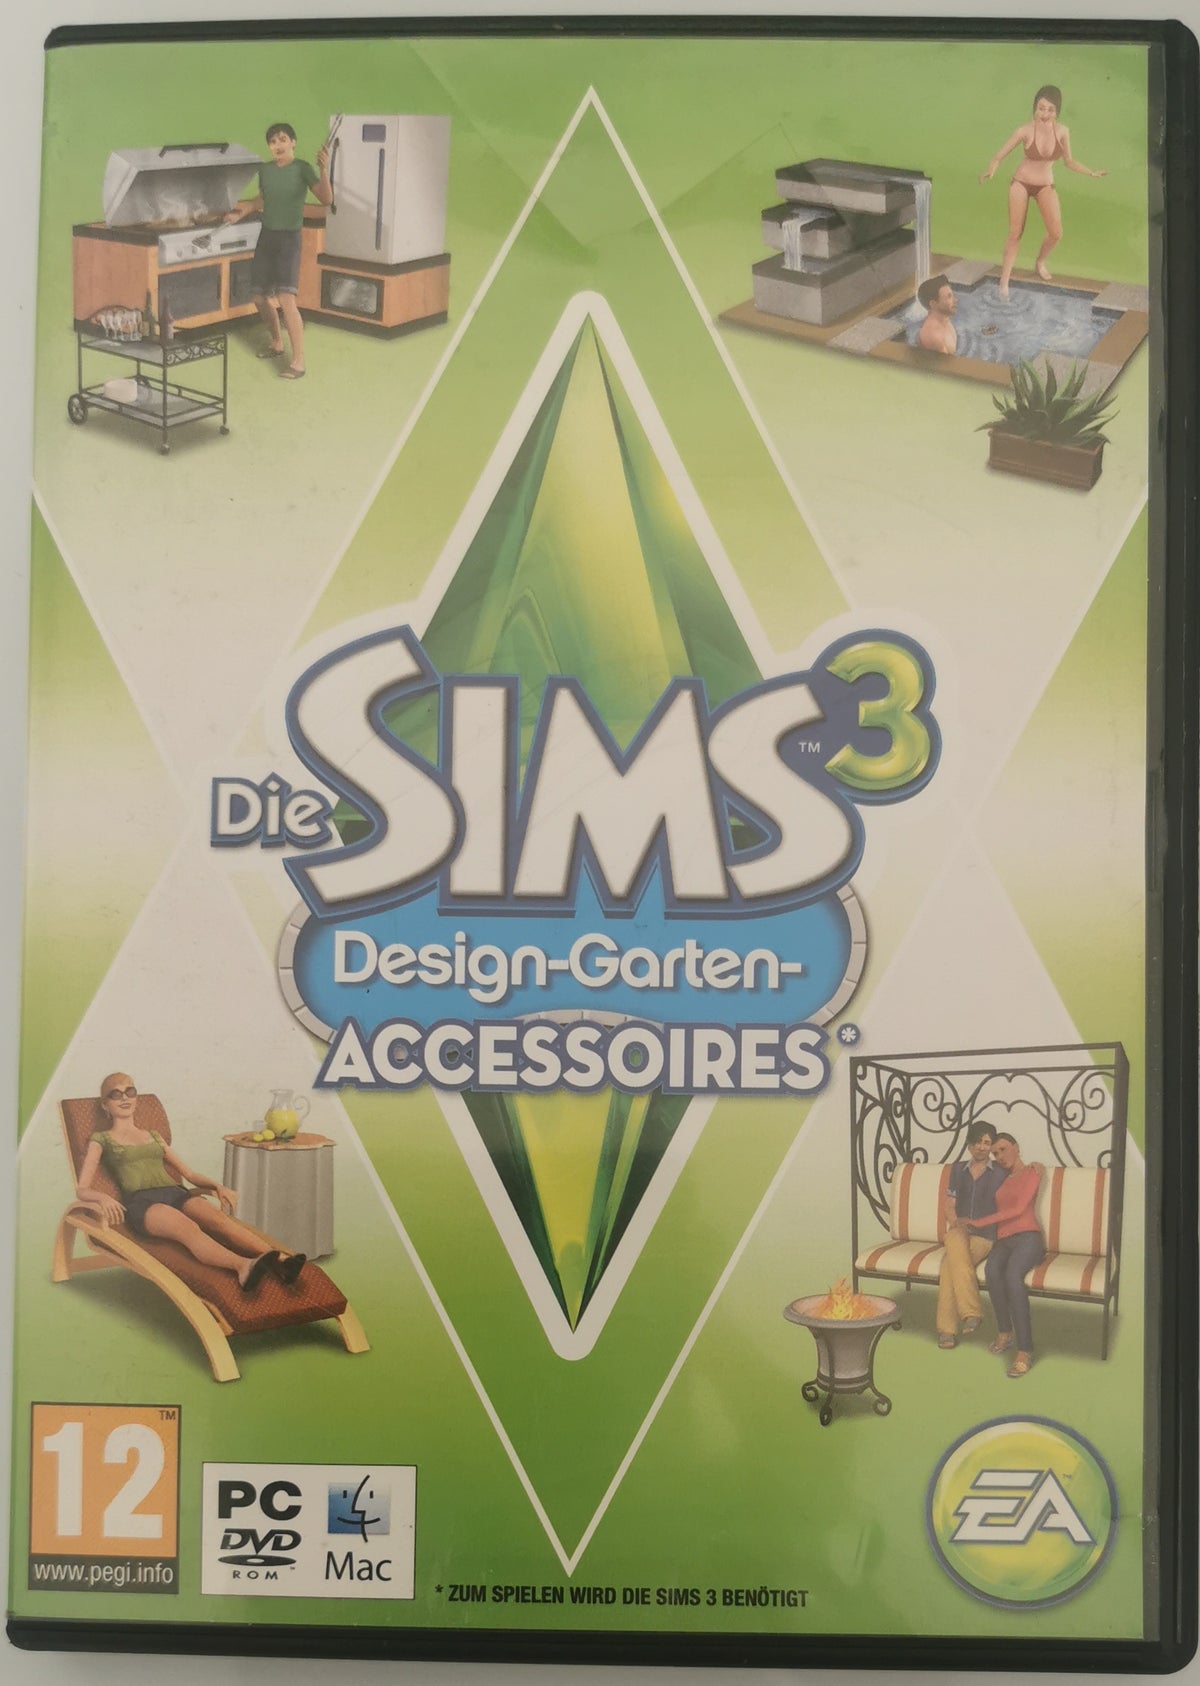 Die Sims 3 DesignGartenAccessoires PEGI (Windows) [Gut]